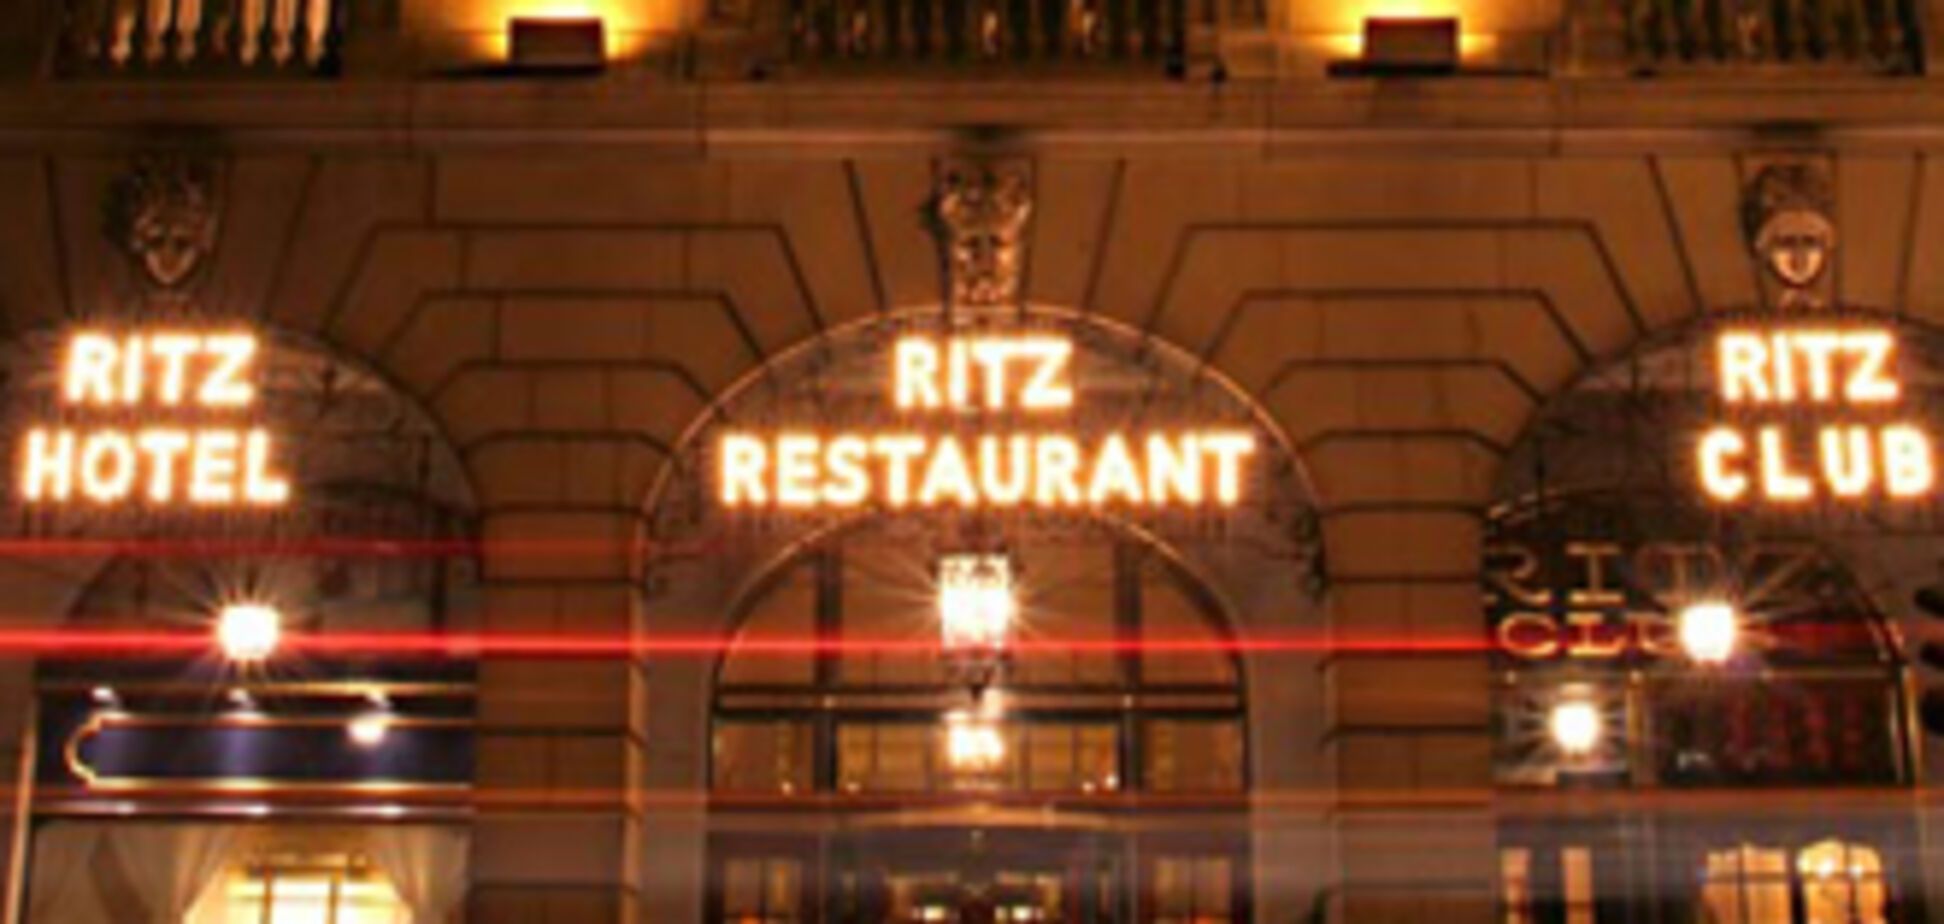 Британцу дали 5 лет за попытку продать отель Ritz